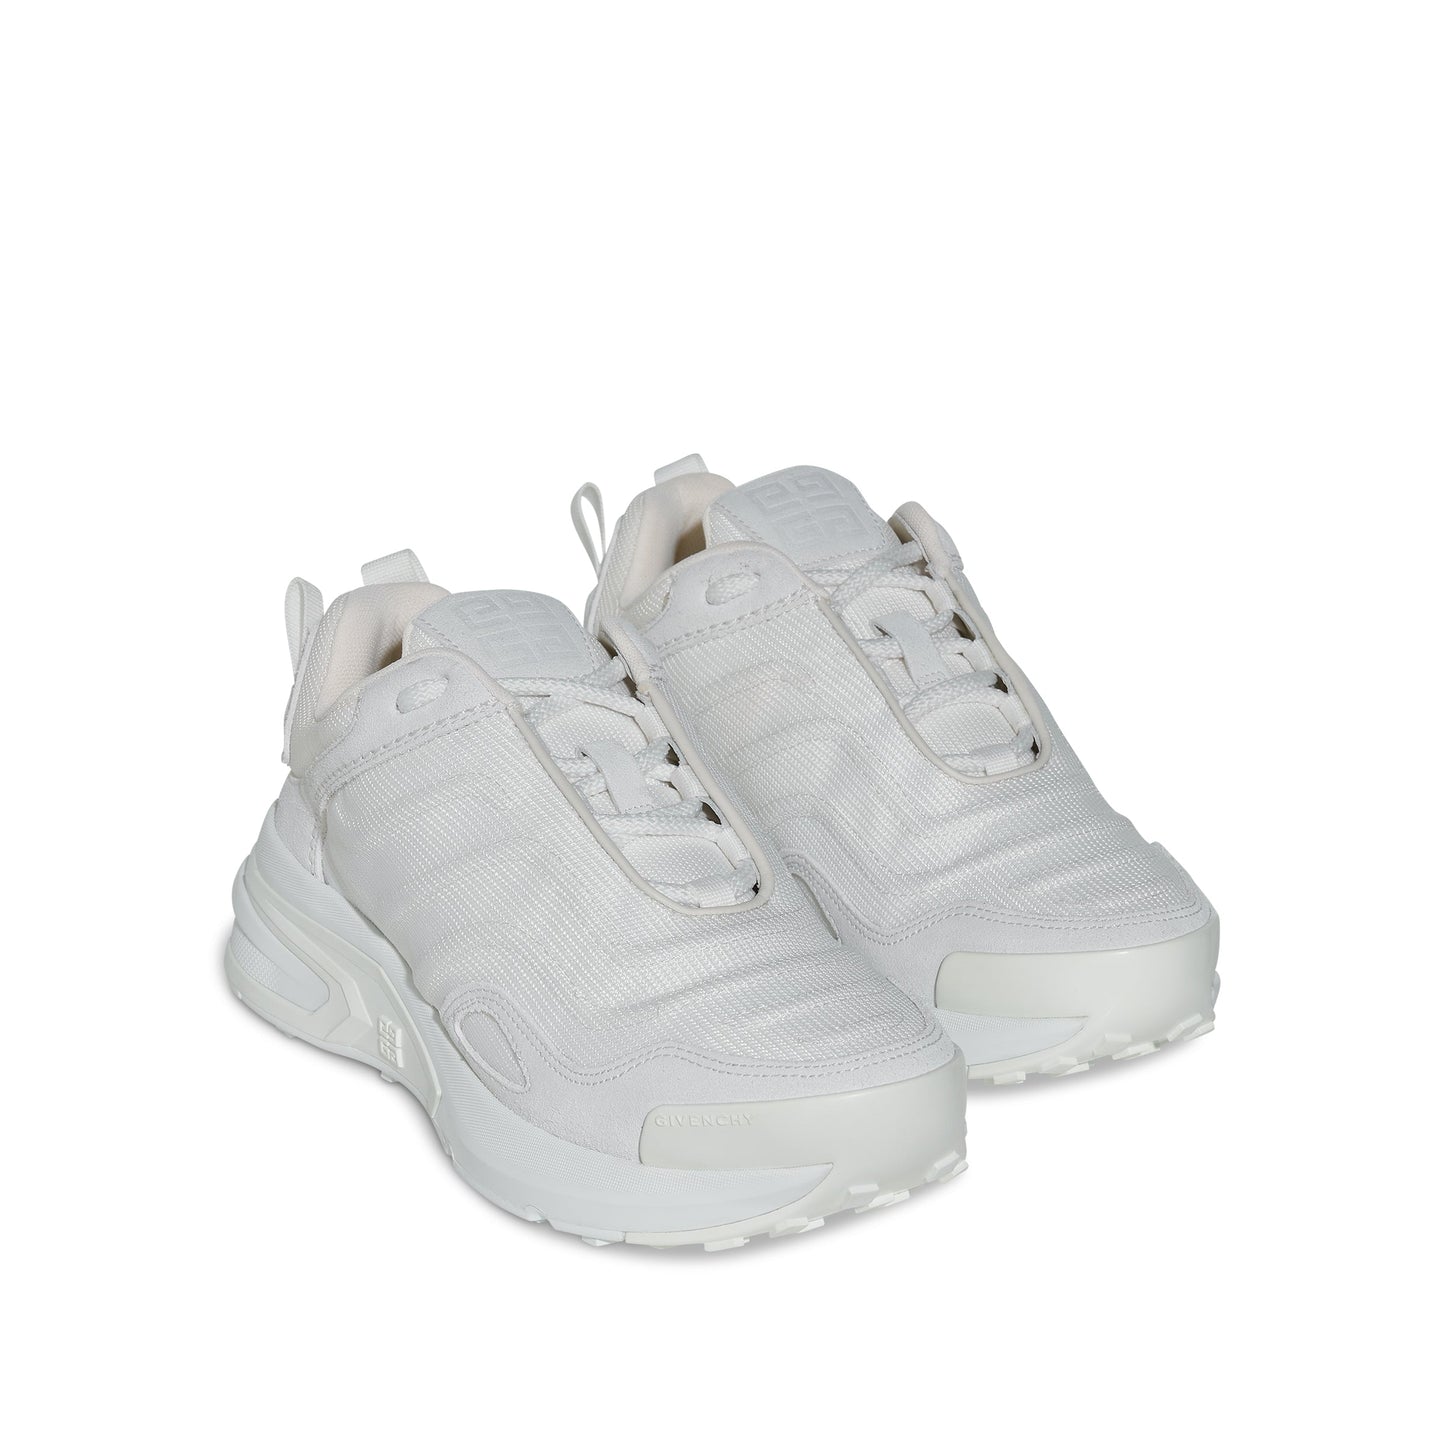 GIV 1 Light Runner Sneakers in White